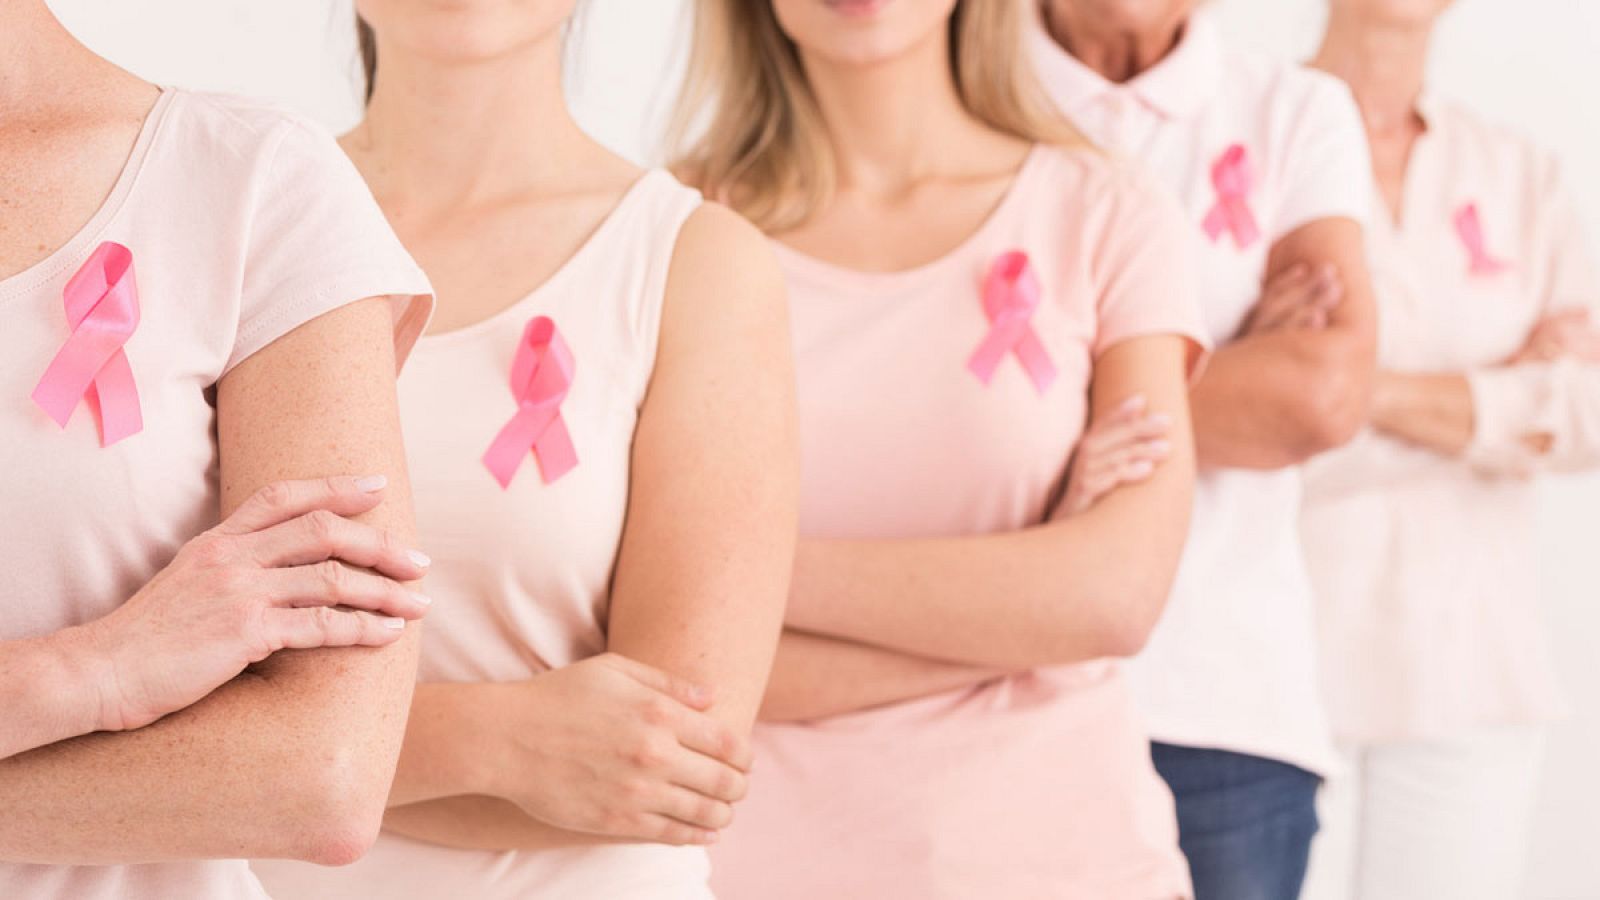 Día Internacional del cáncer de mama | Cáncer de mama, el tumor más frecuente en las mujeres - RTVE.es